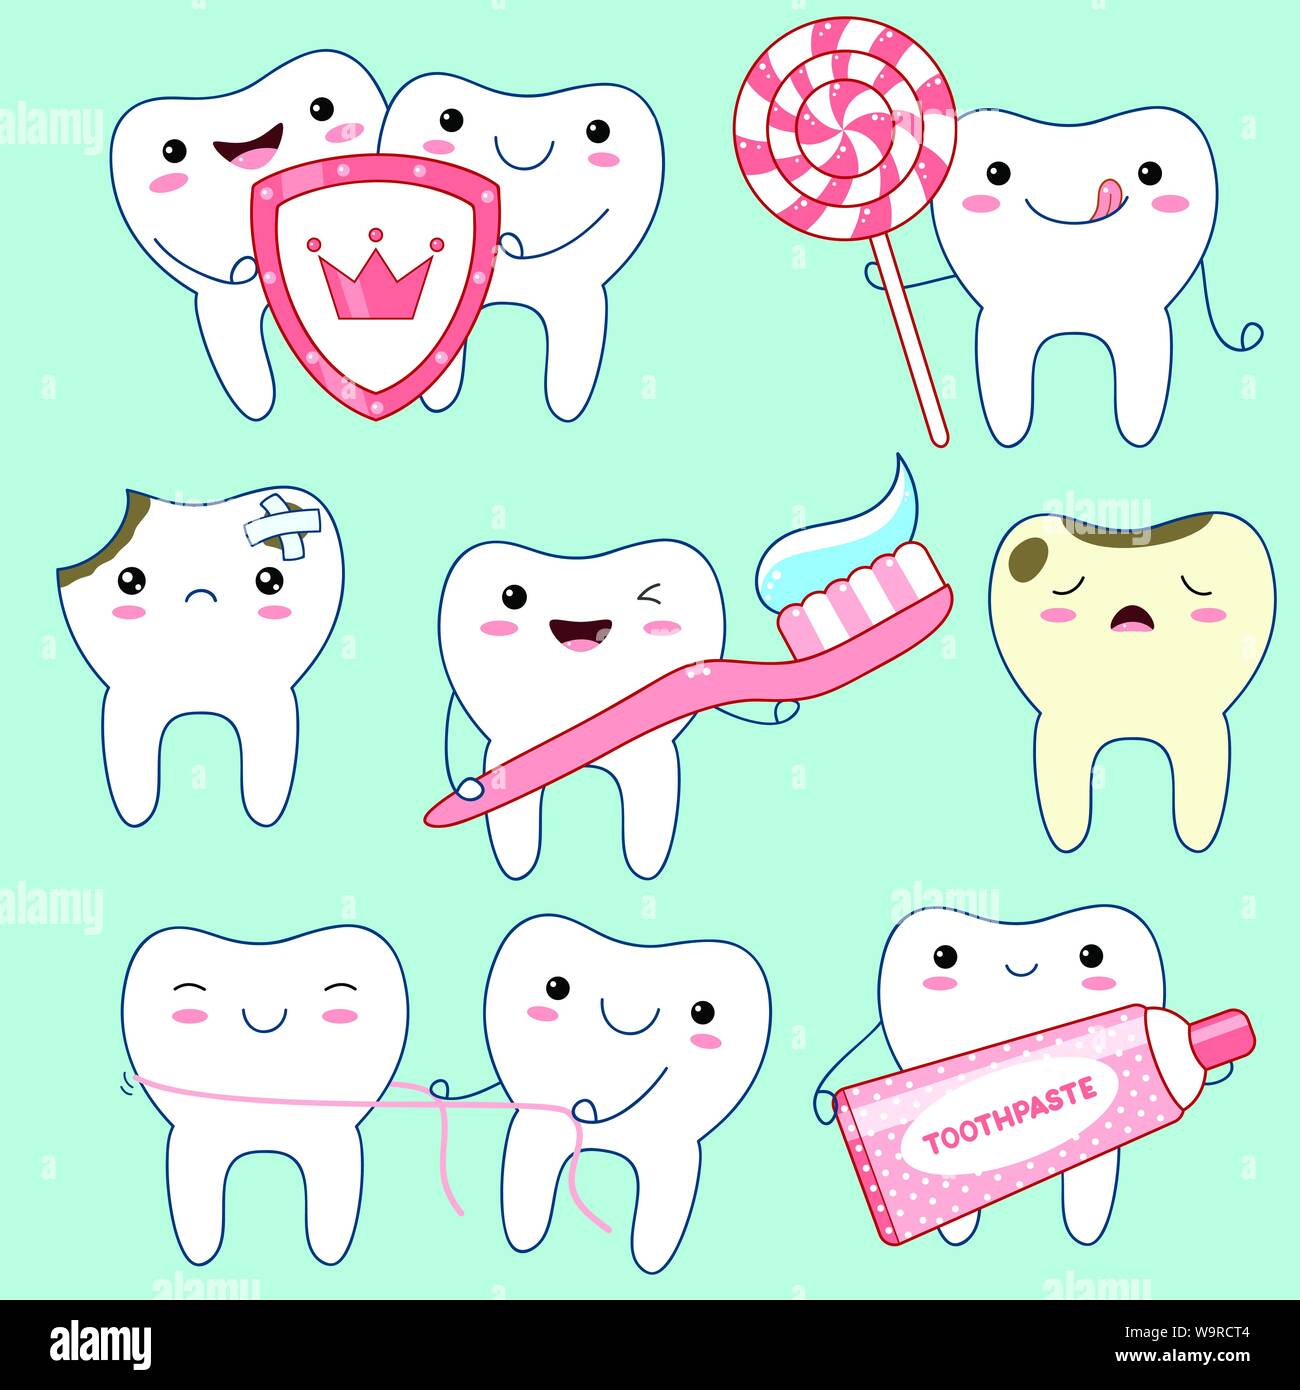 Funny cute ensemble d'icônes dans les dents style kawaii avec sourire et joues roses. Collection d'illustrations sur le thème de l'hygiène buccale. Spe8 Illustration de Vecteur